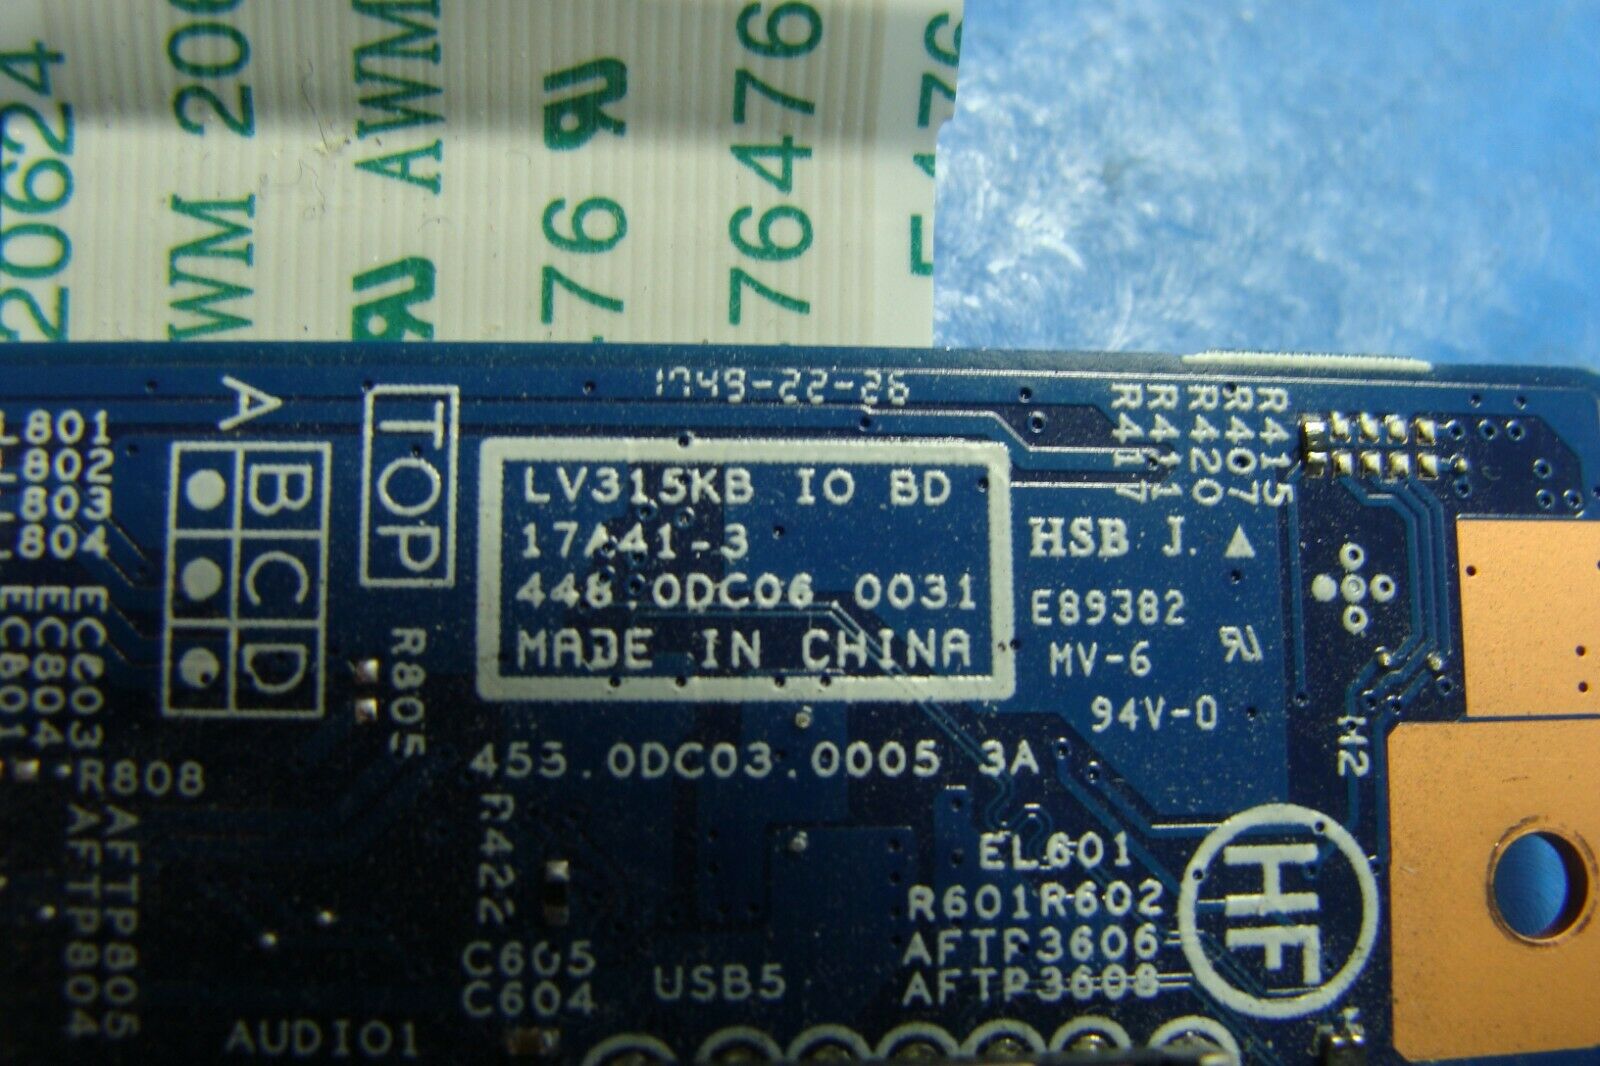 Lenovo V330-15IKB 15.6